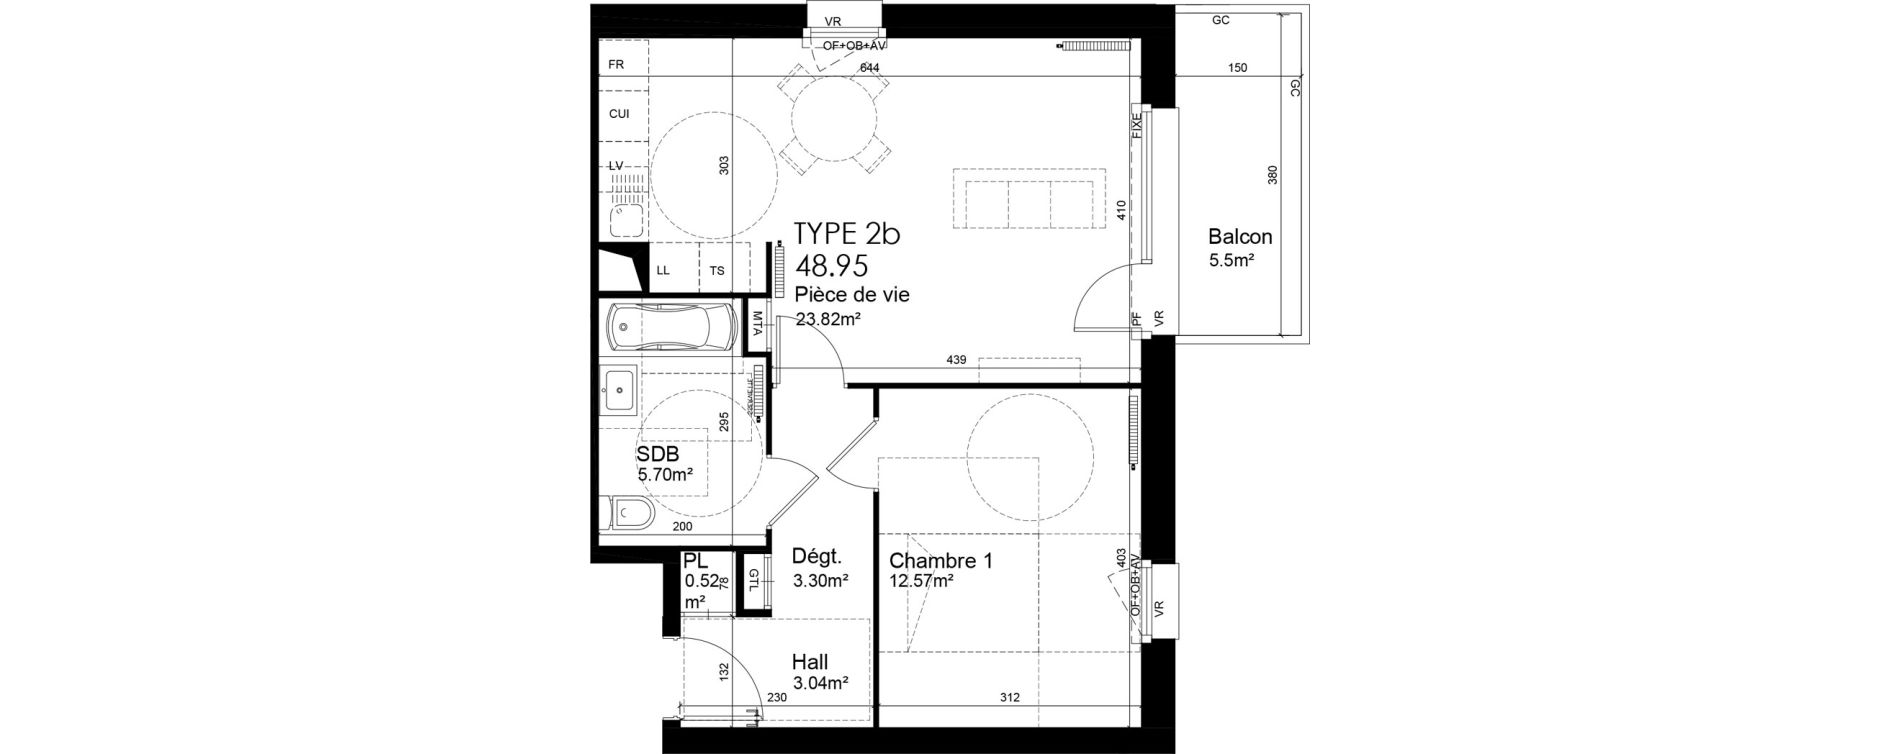 Appartement T2 de 48,95 m2 &agrave; Wattrelos Hippodrome - broche de fer - saint-li&eacute;vin - bas chemin